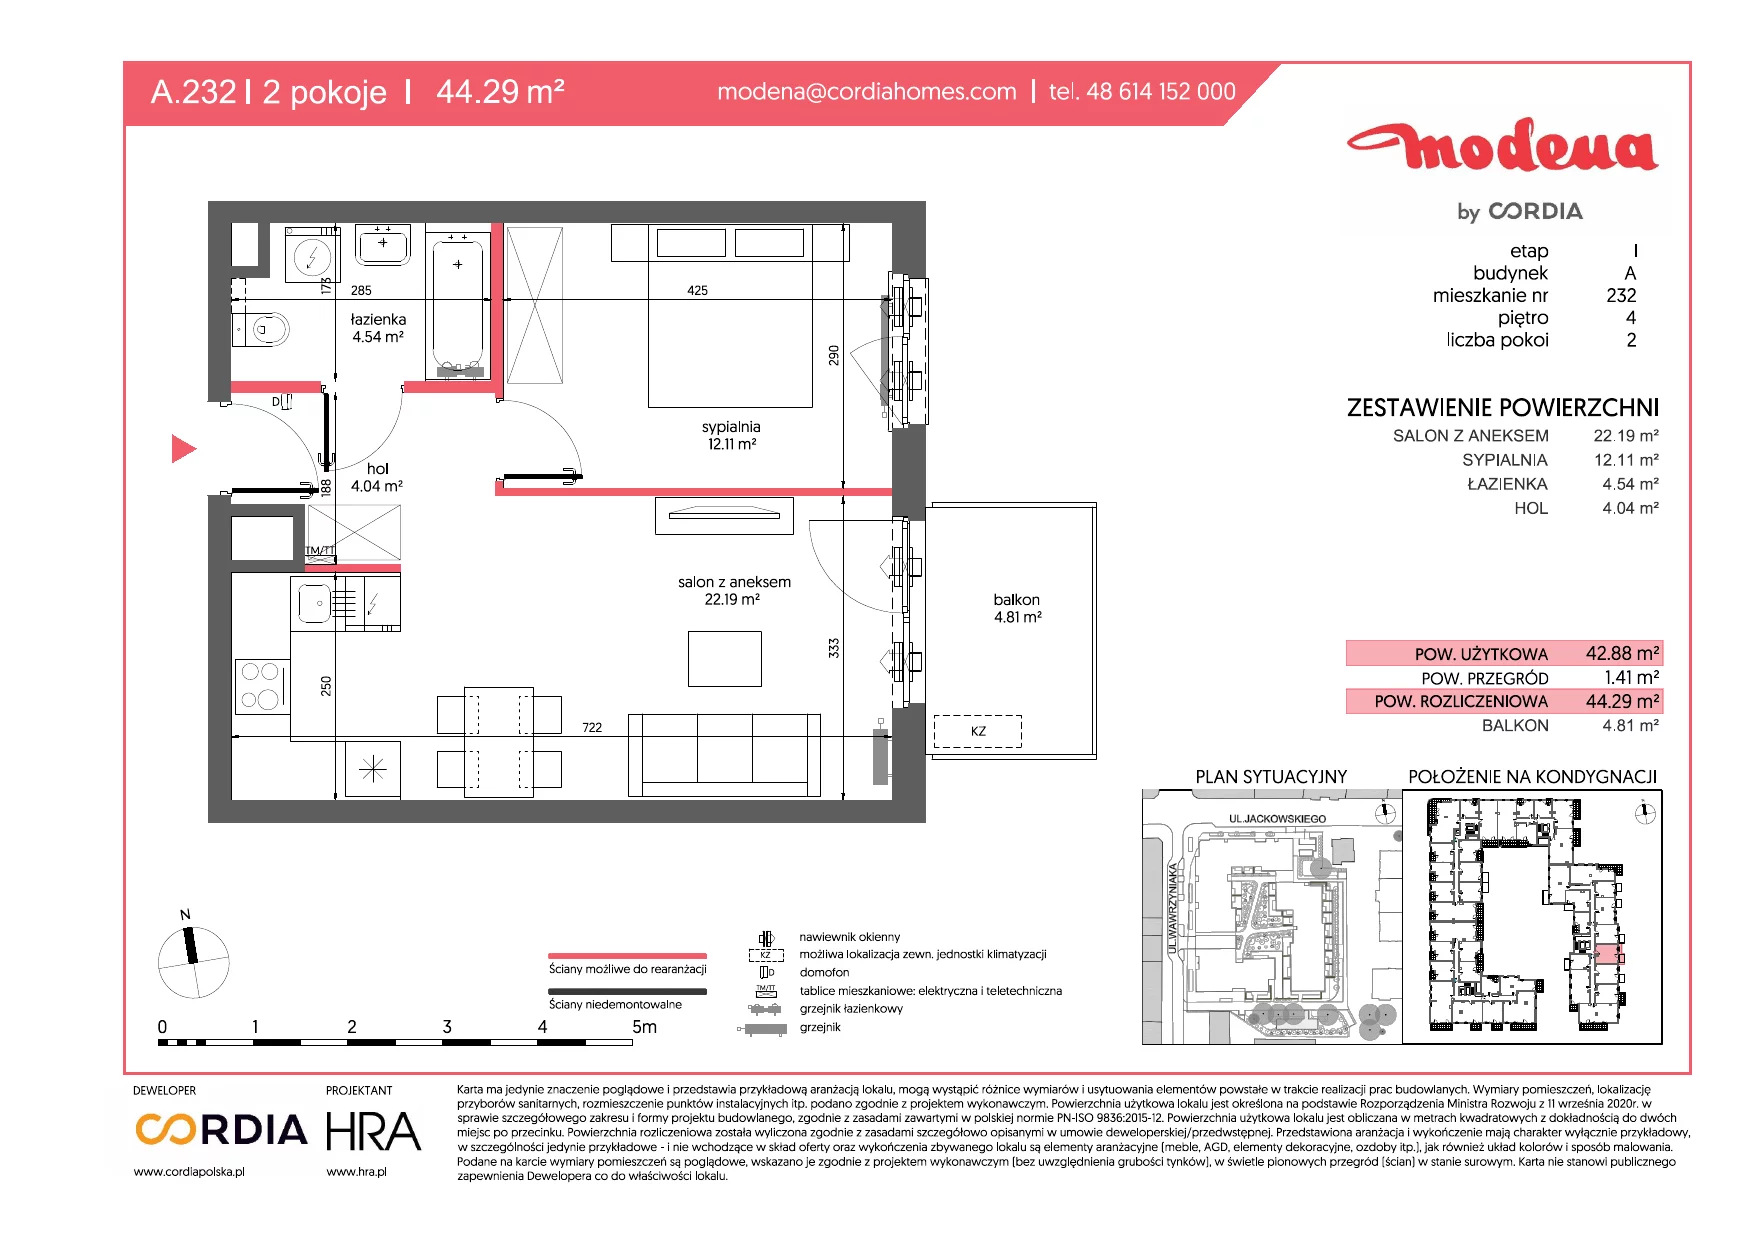 Mieszkanie 44,29 m², piętro 4, oferta nr A.232, Modena, Poznań, Jeżyce, Jeżyce, ul. Jackowskiego 24